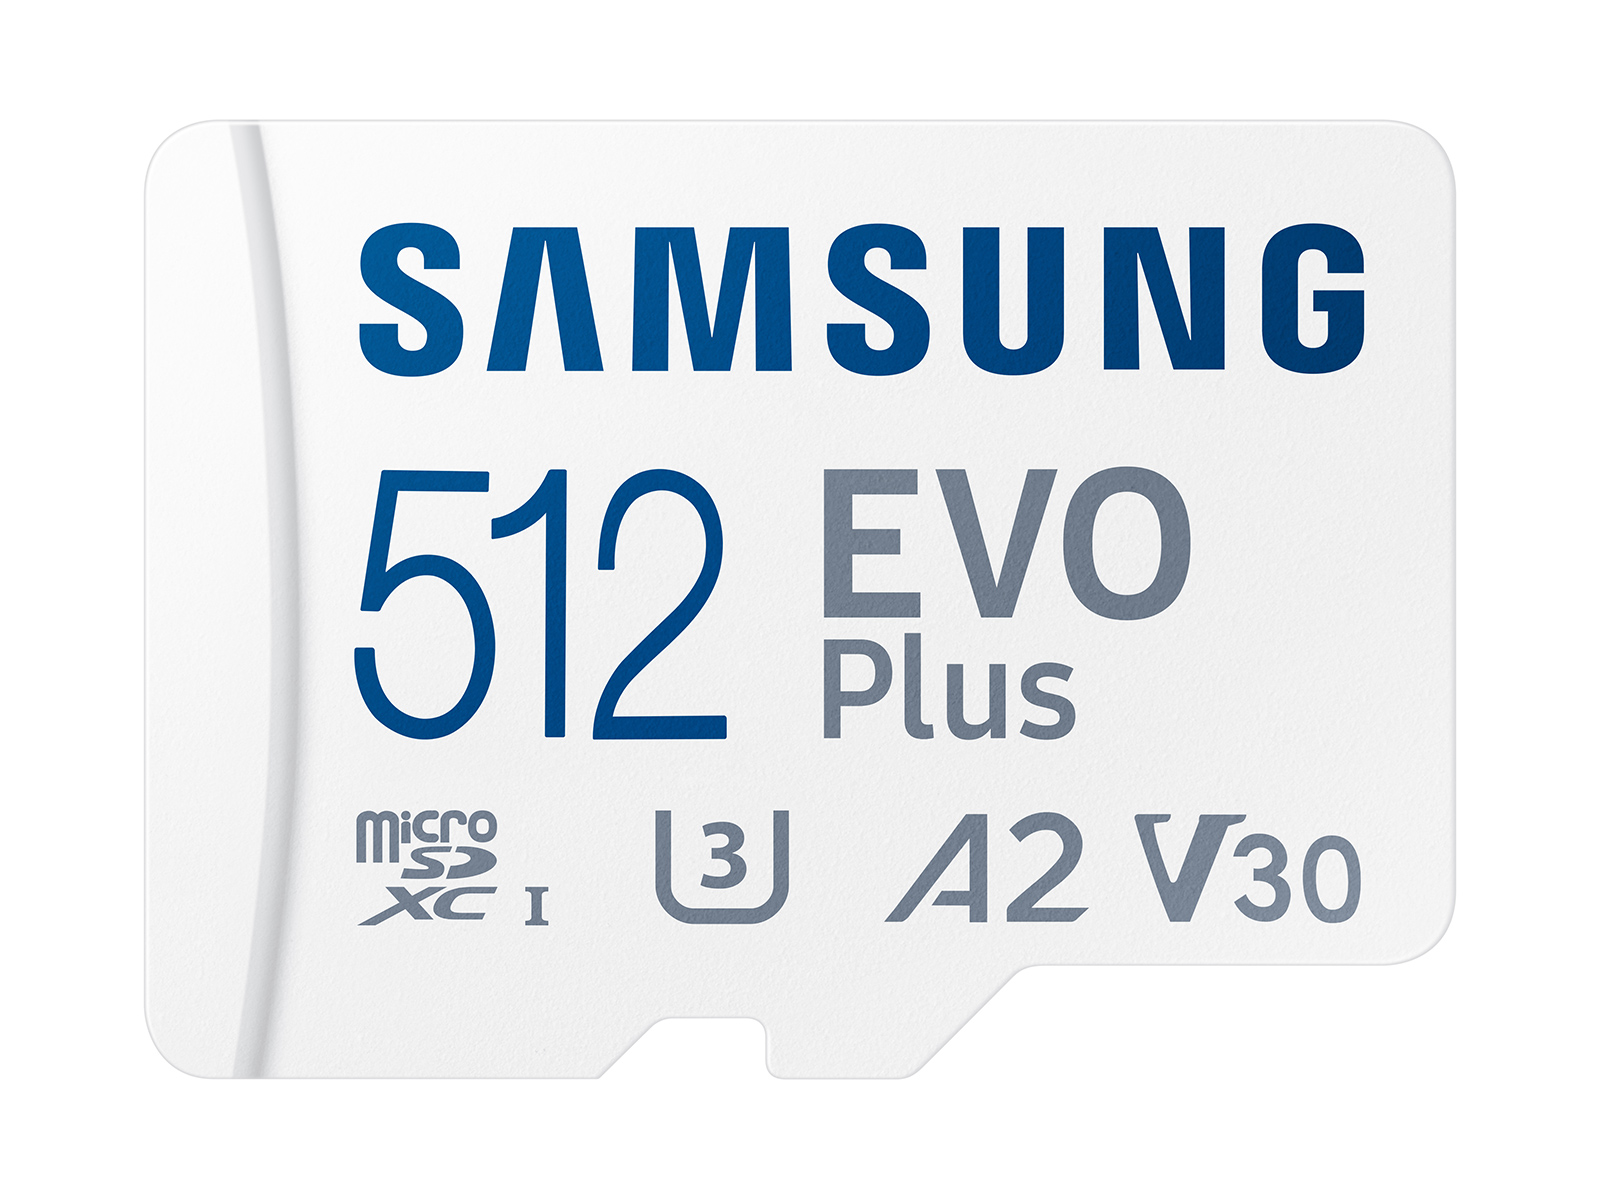 Carte mémoire 128 Go SAMSUNG M-SD 128G - Micro SD EVO avec